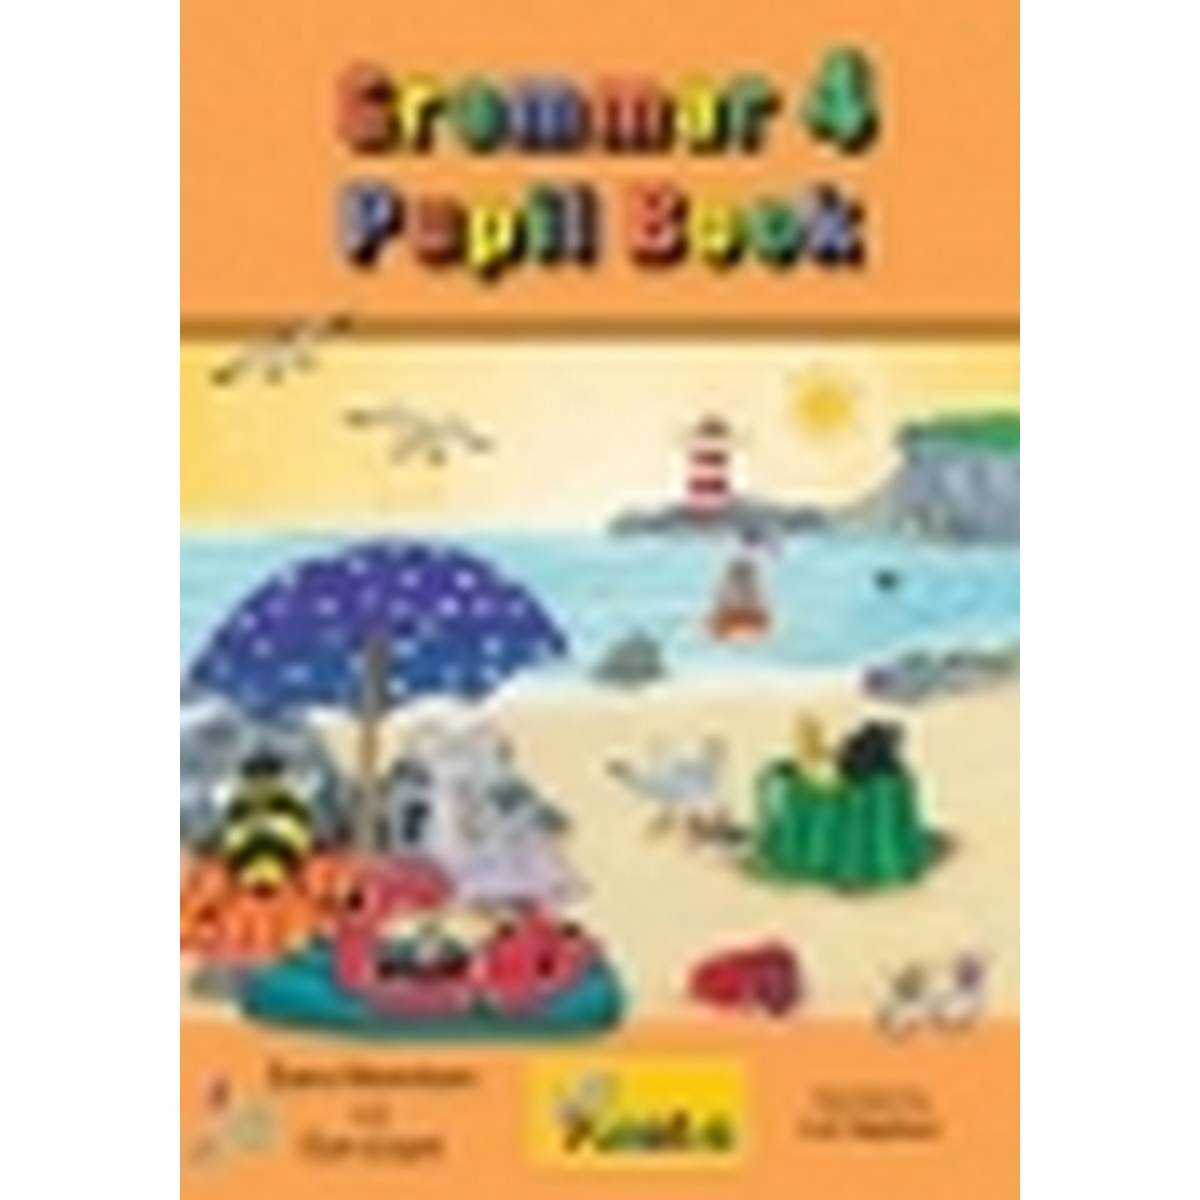 Jolly Grammar 4 Pupil Book